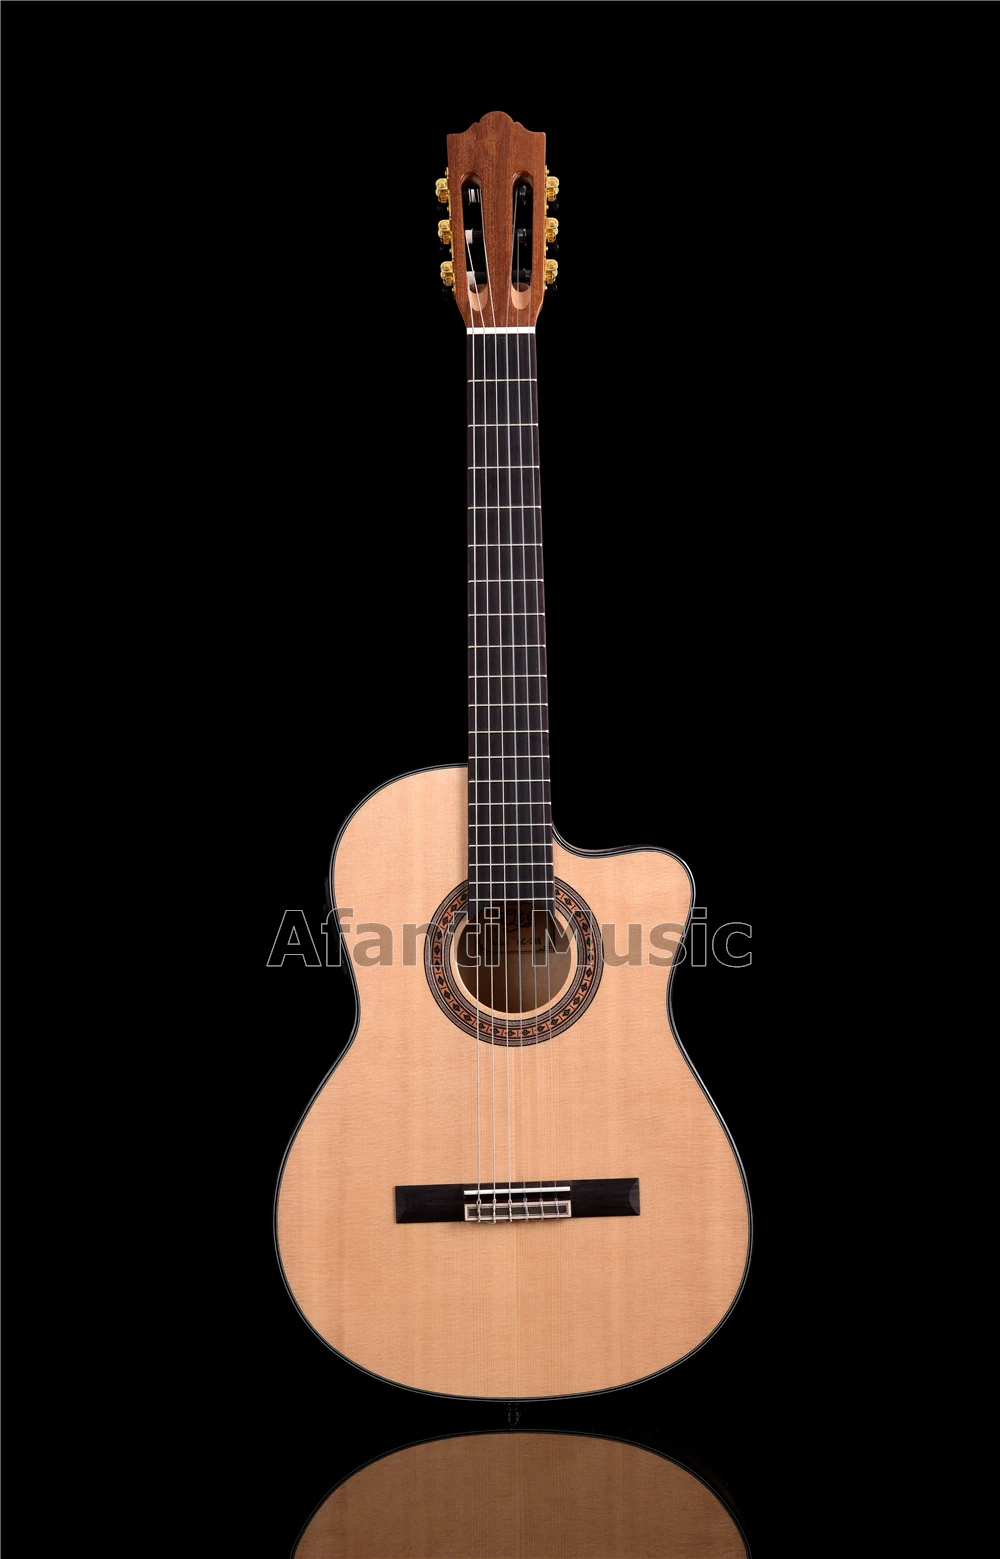 Afanti музыка 39 дюймов Твердая ель Топ Классическая гитара с эквалайзером(ACL-1202